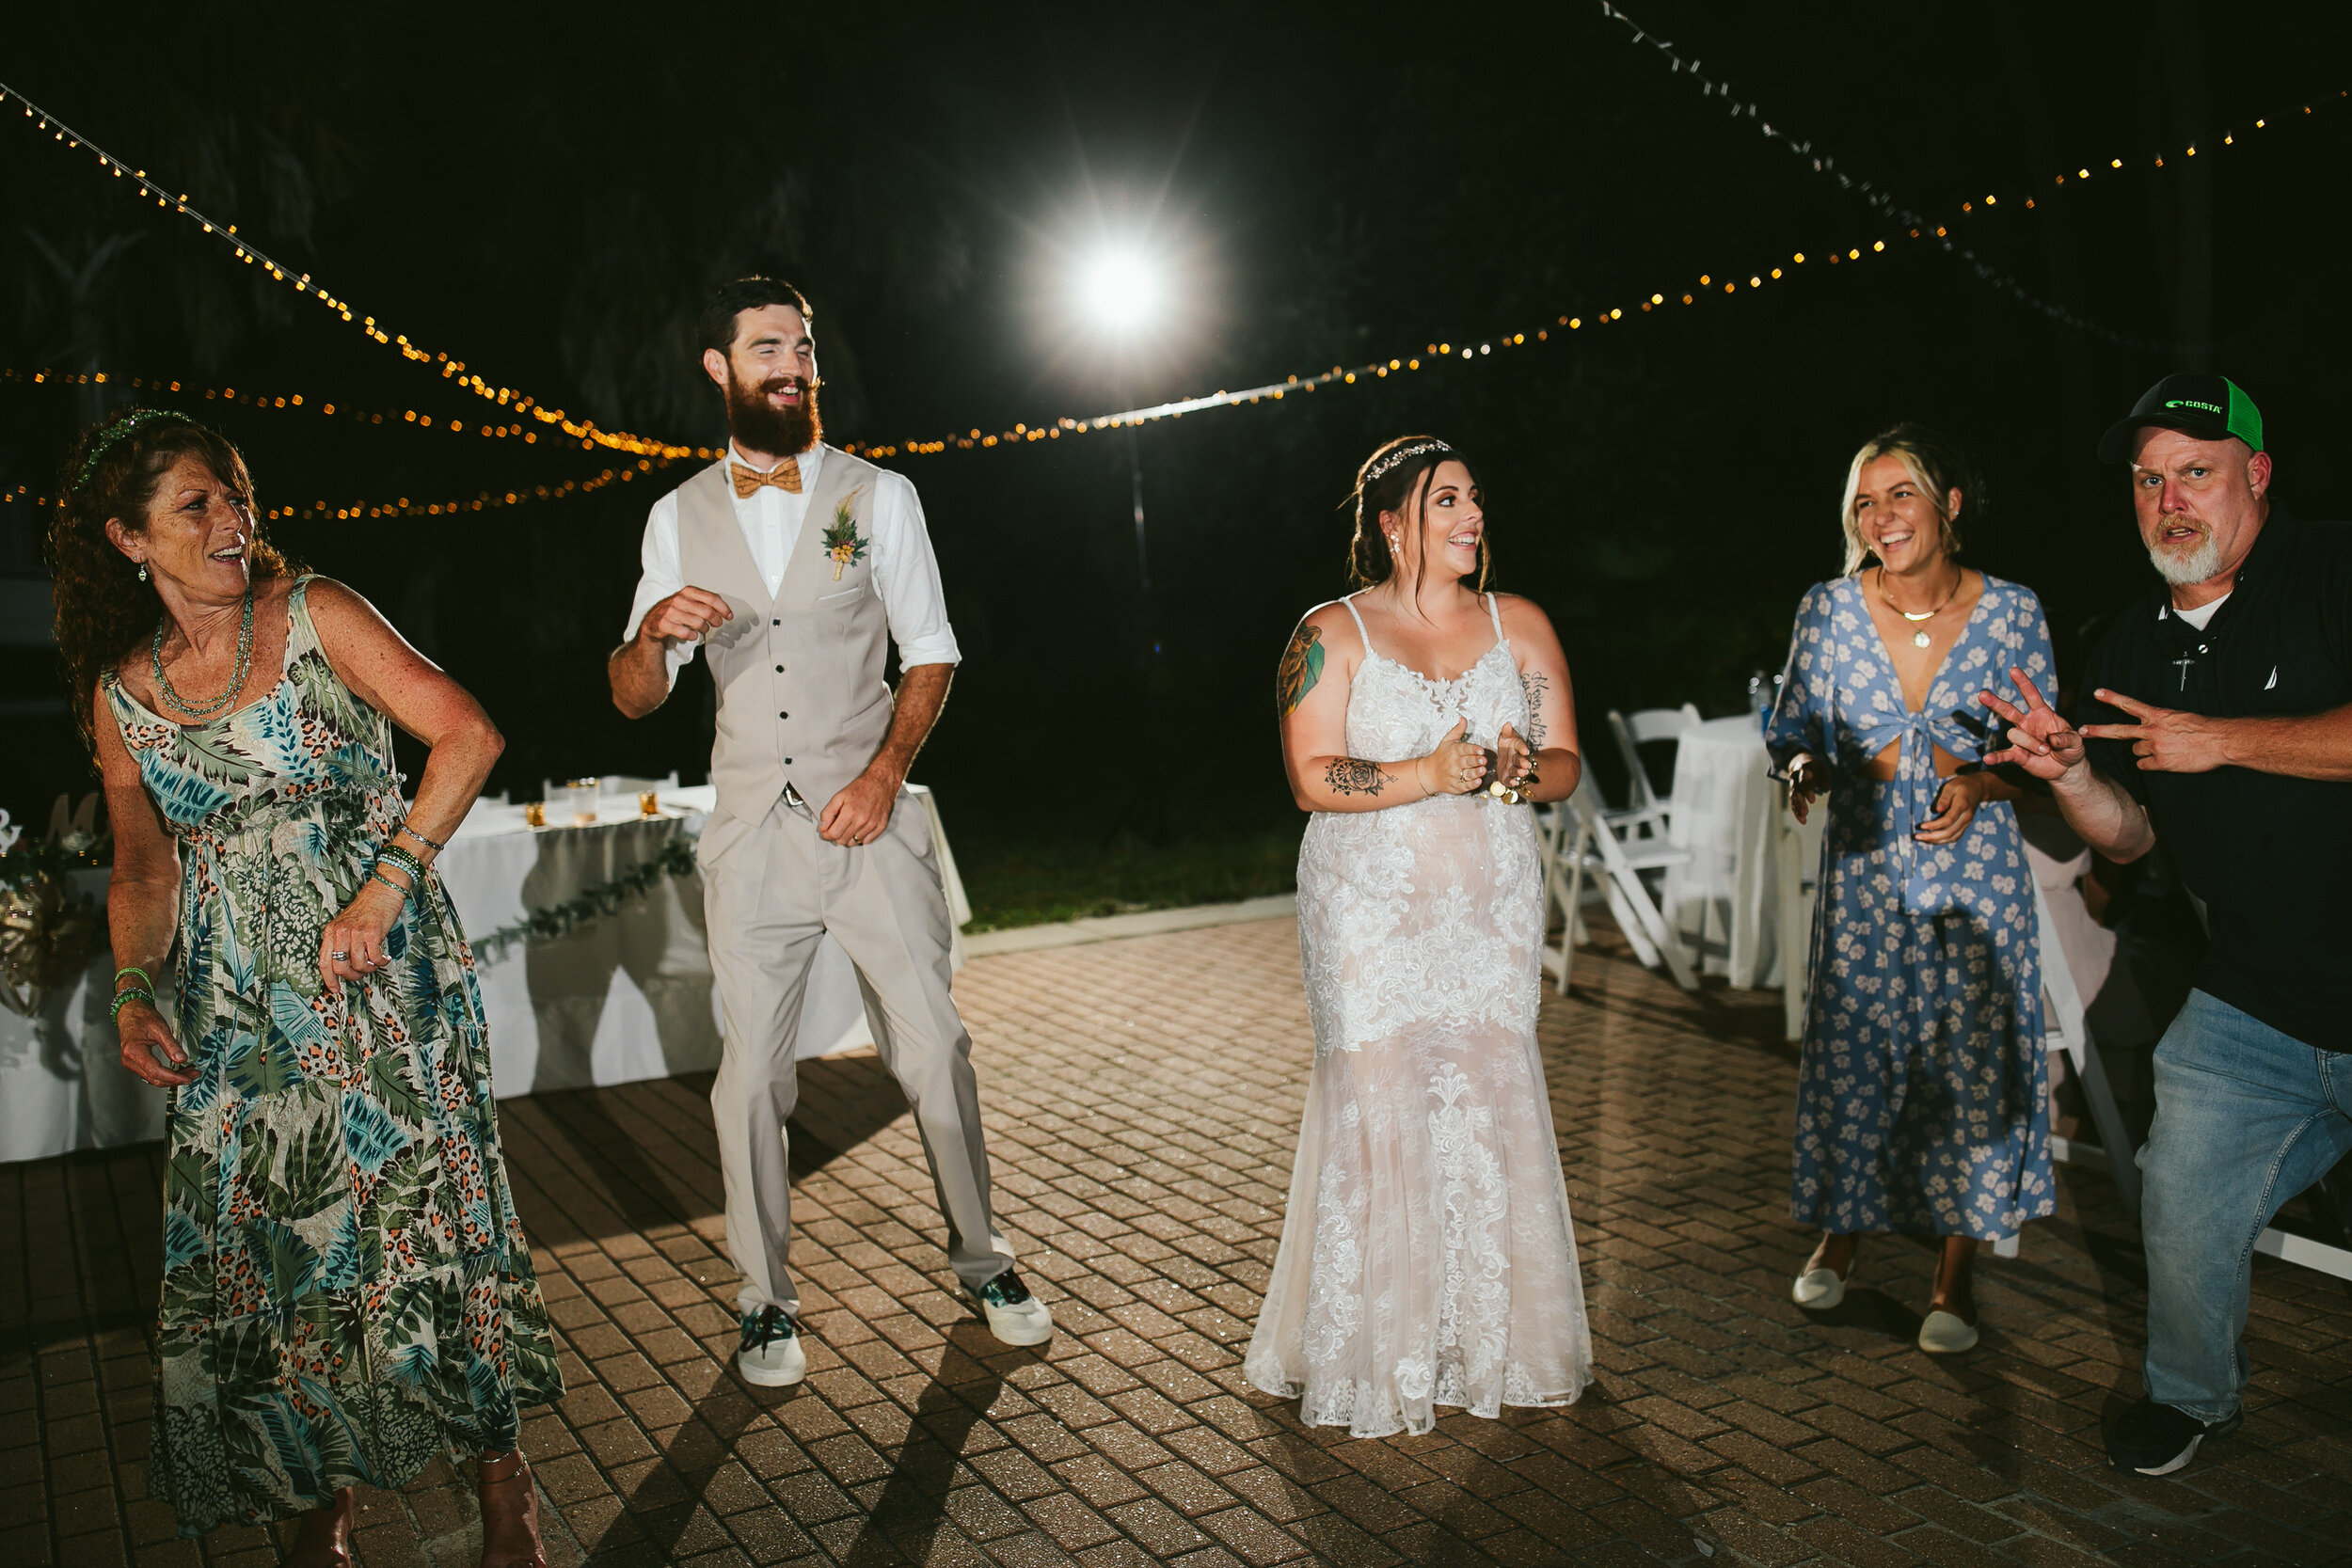 Wedding-Guests-Dancing-Bride-Groom